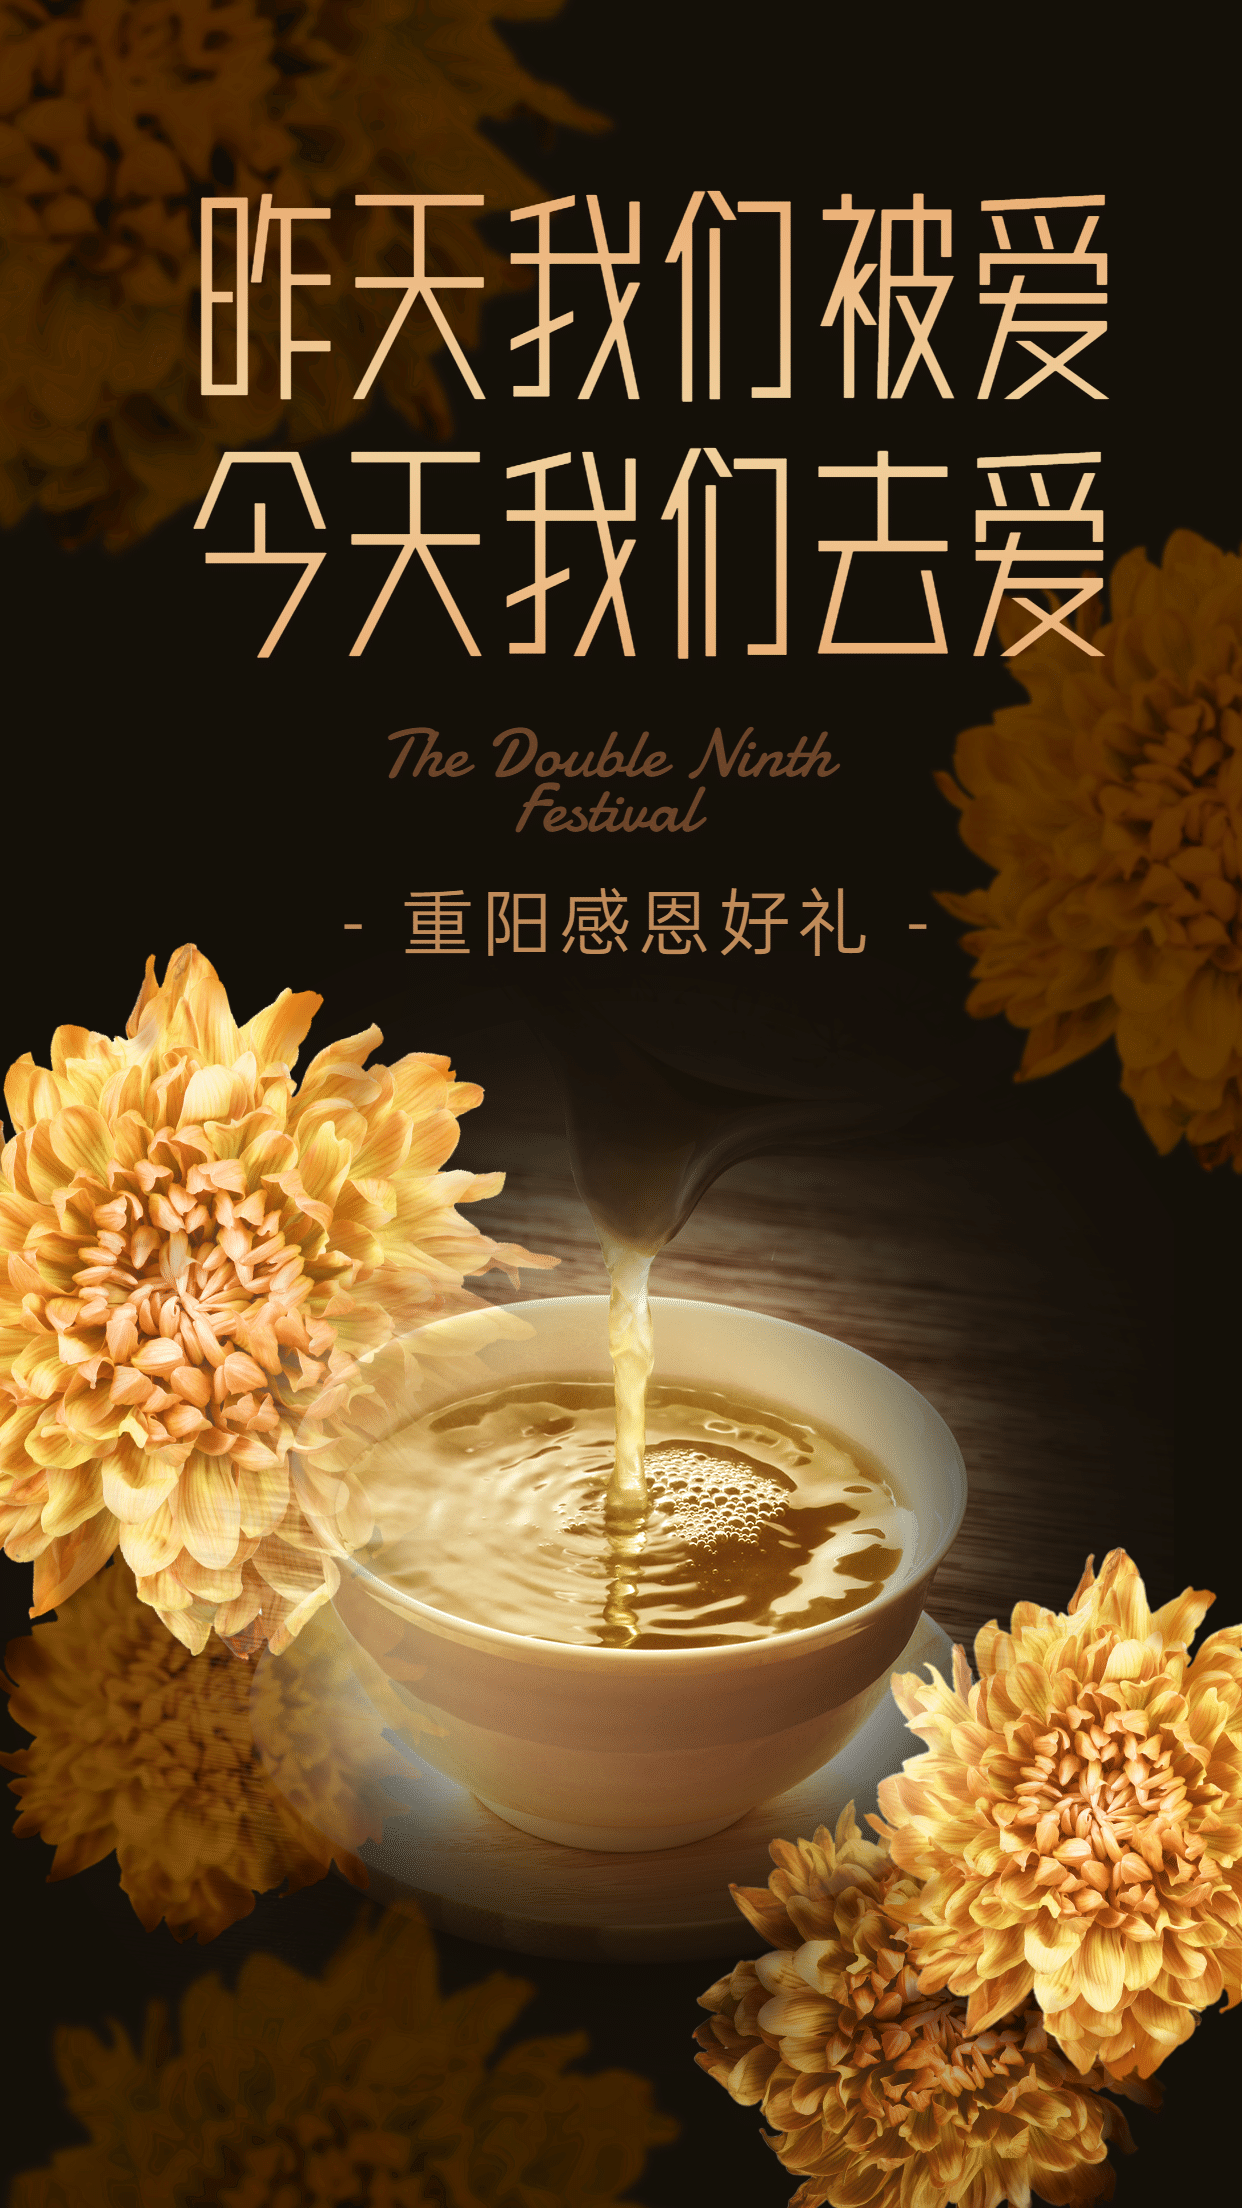 重阳节祝福晒产品展示融图菊花创意海报预览效果